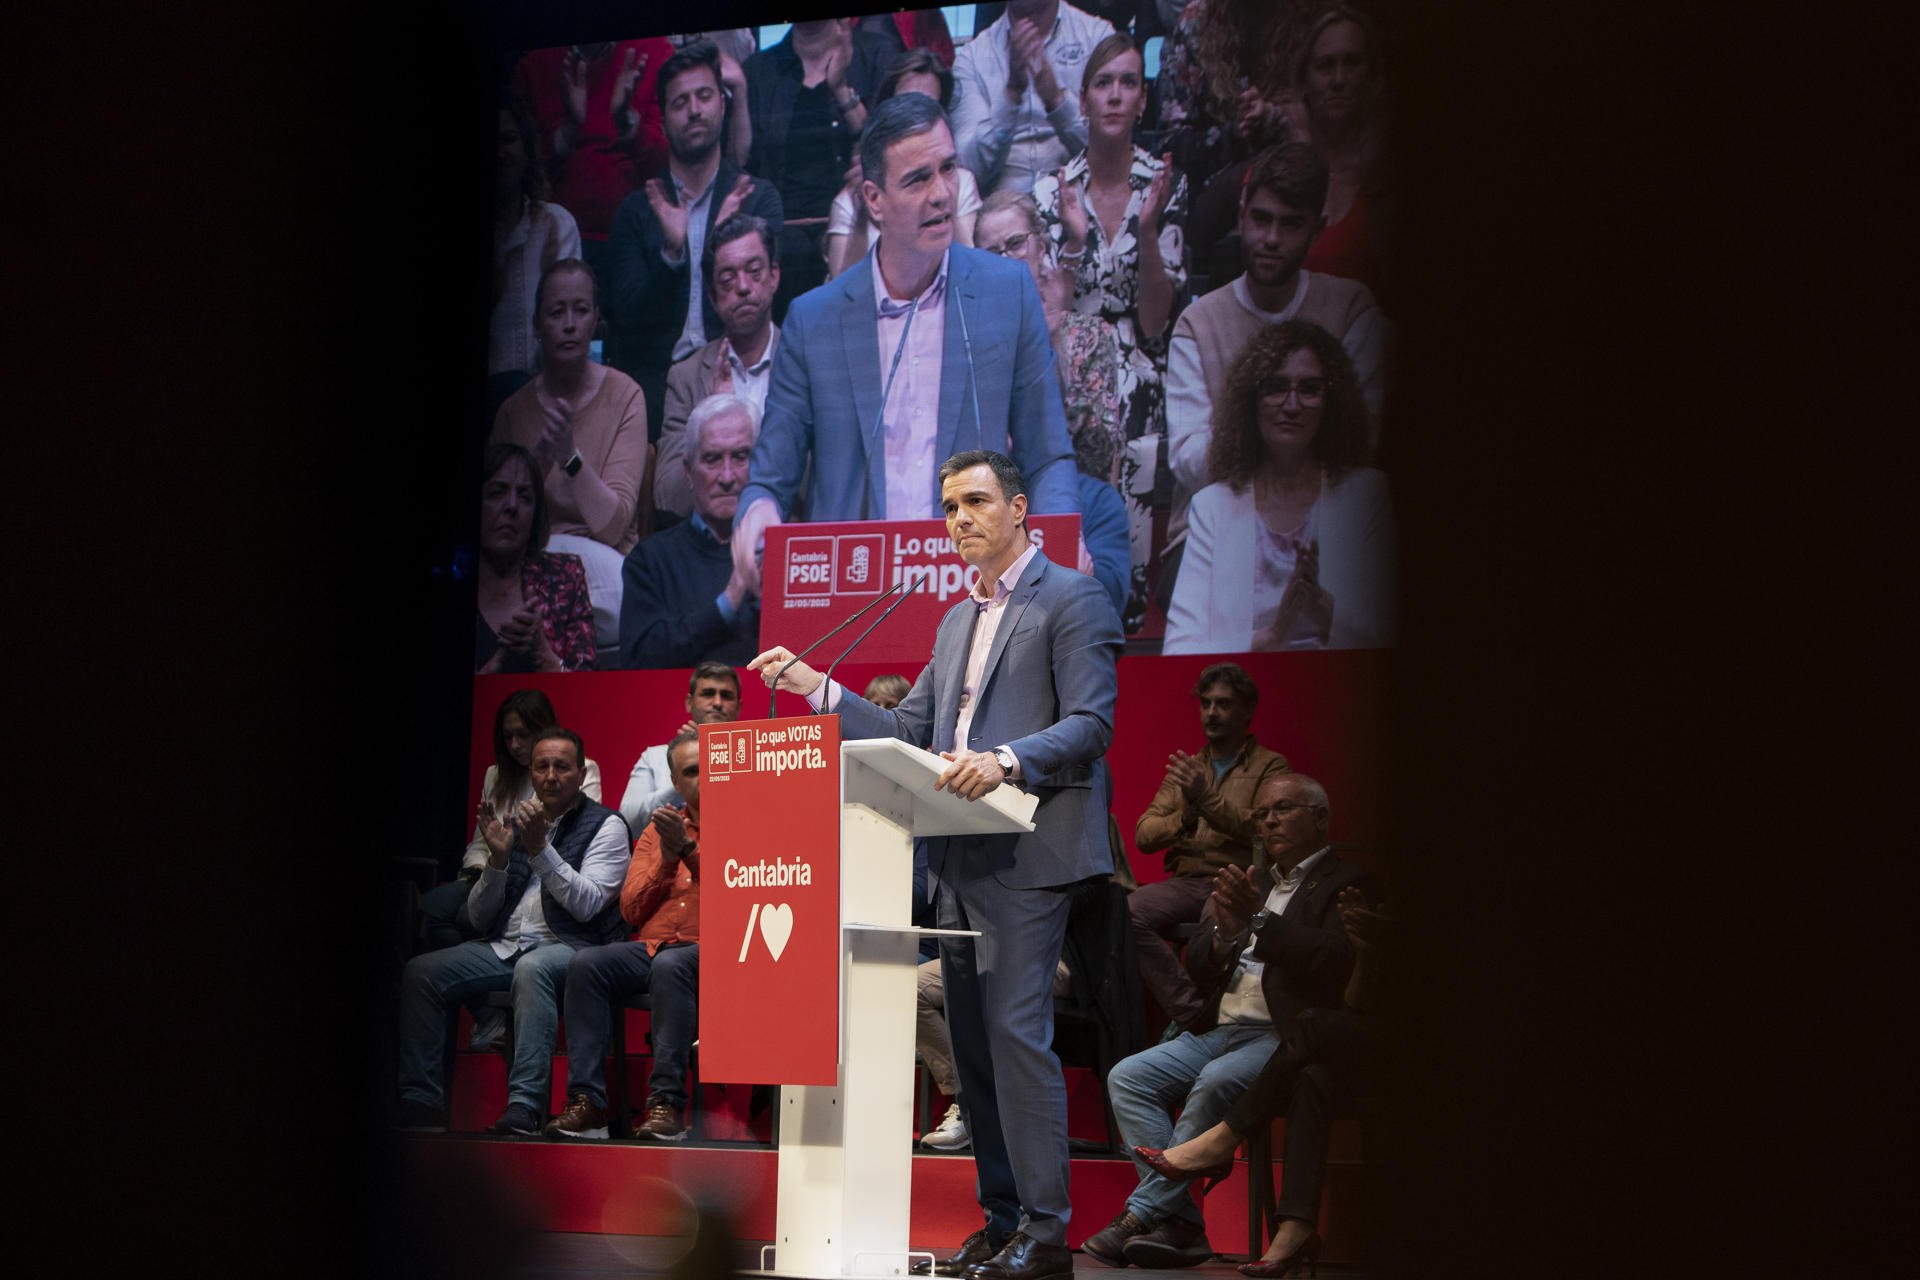 La compra de vots per correu dinamita la recta final de la campanya del PSOE